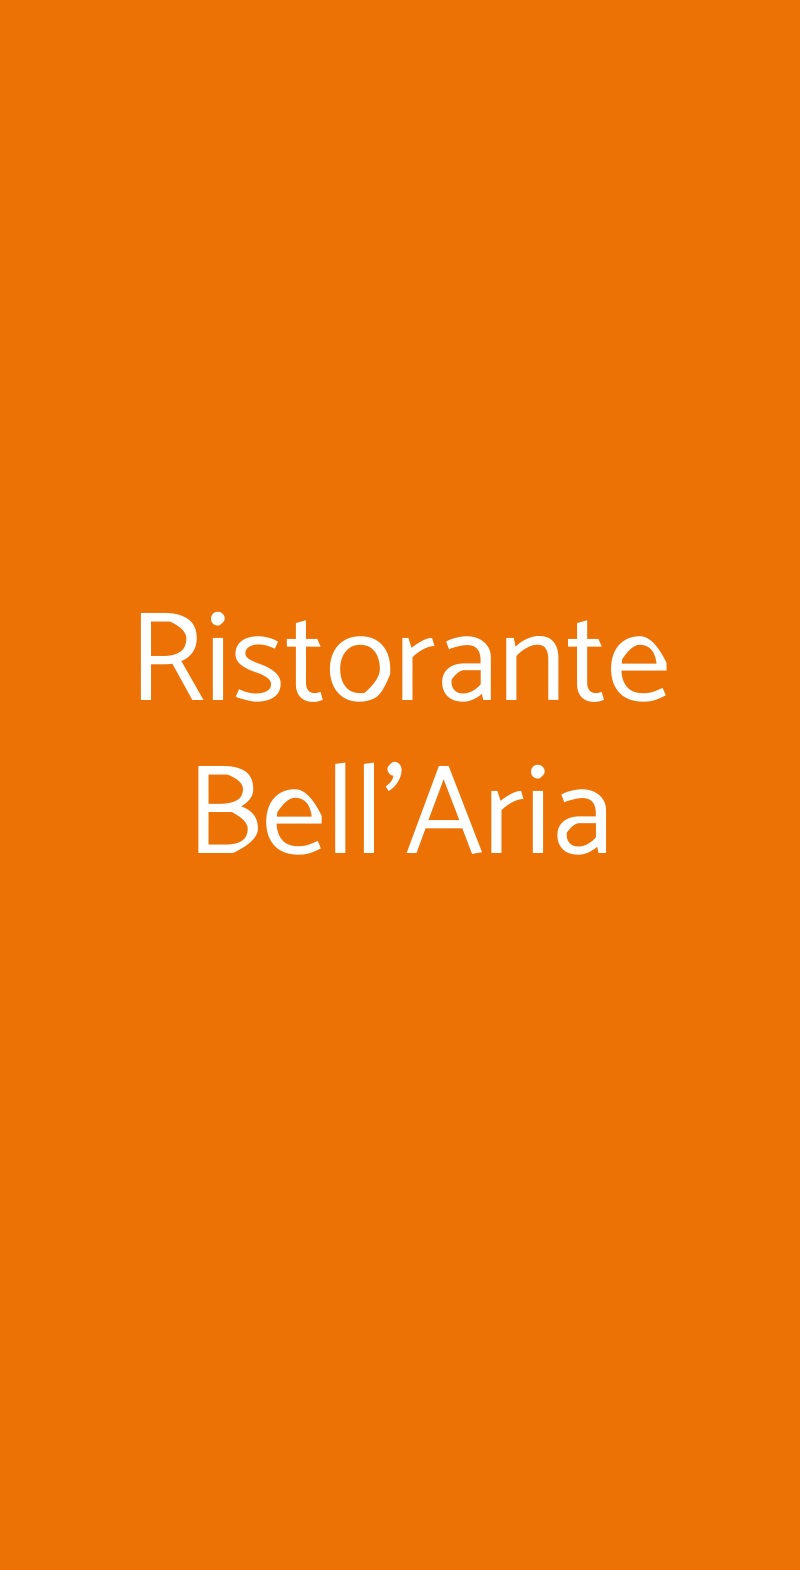 Ristorante Bell'Aria Milano menù 1 pagina